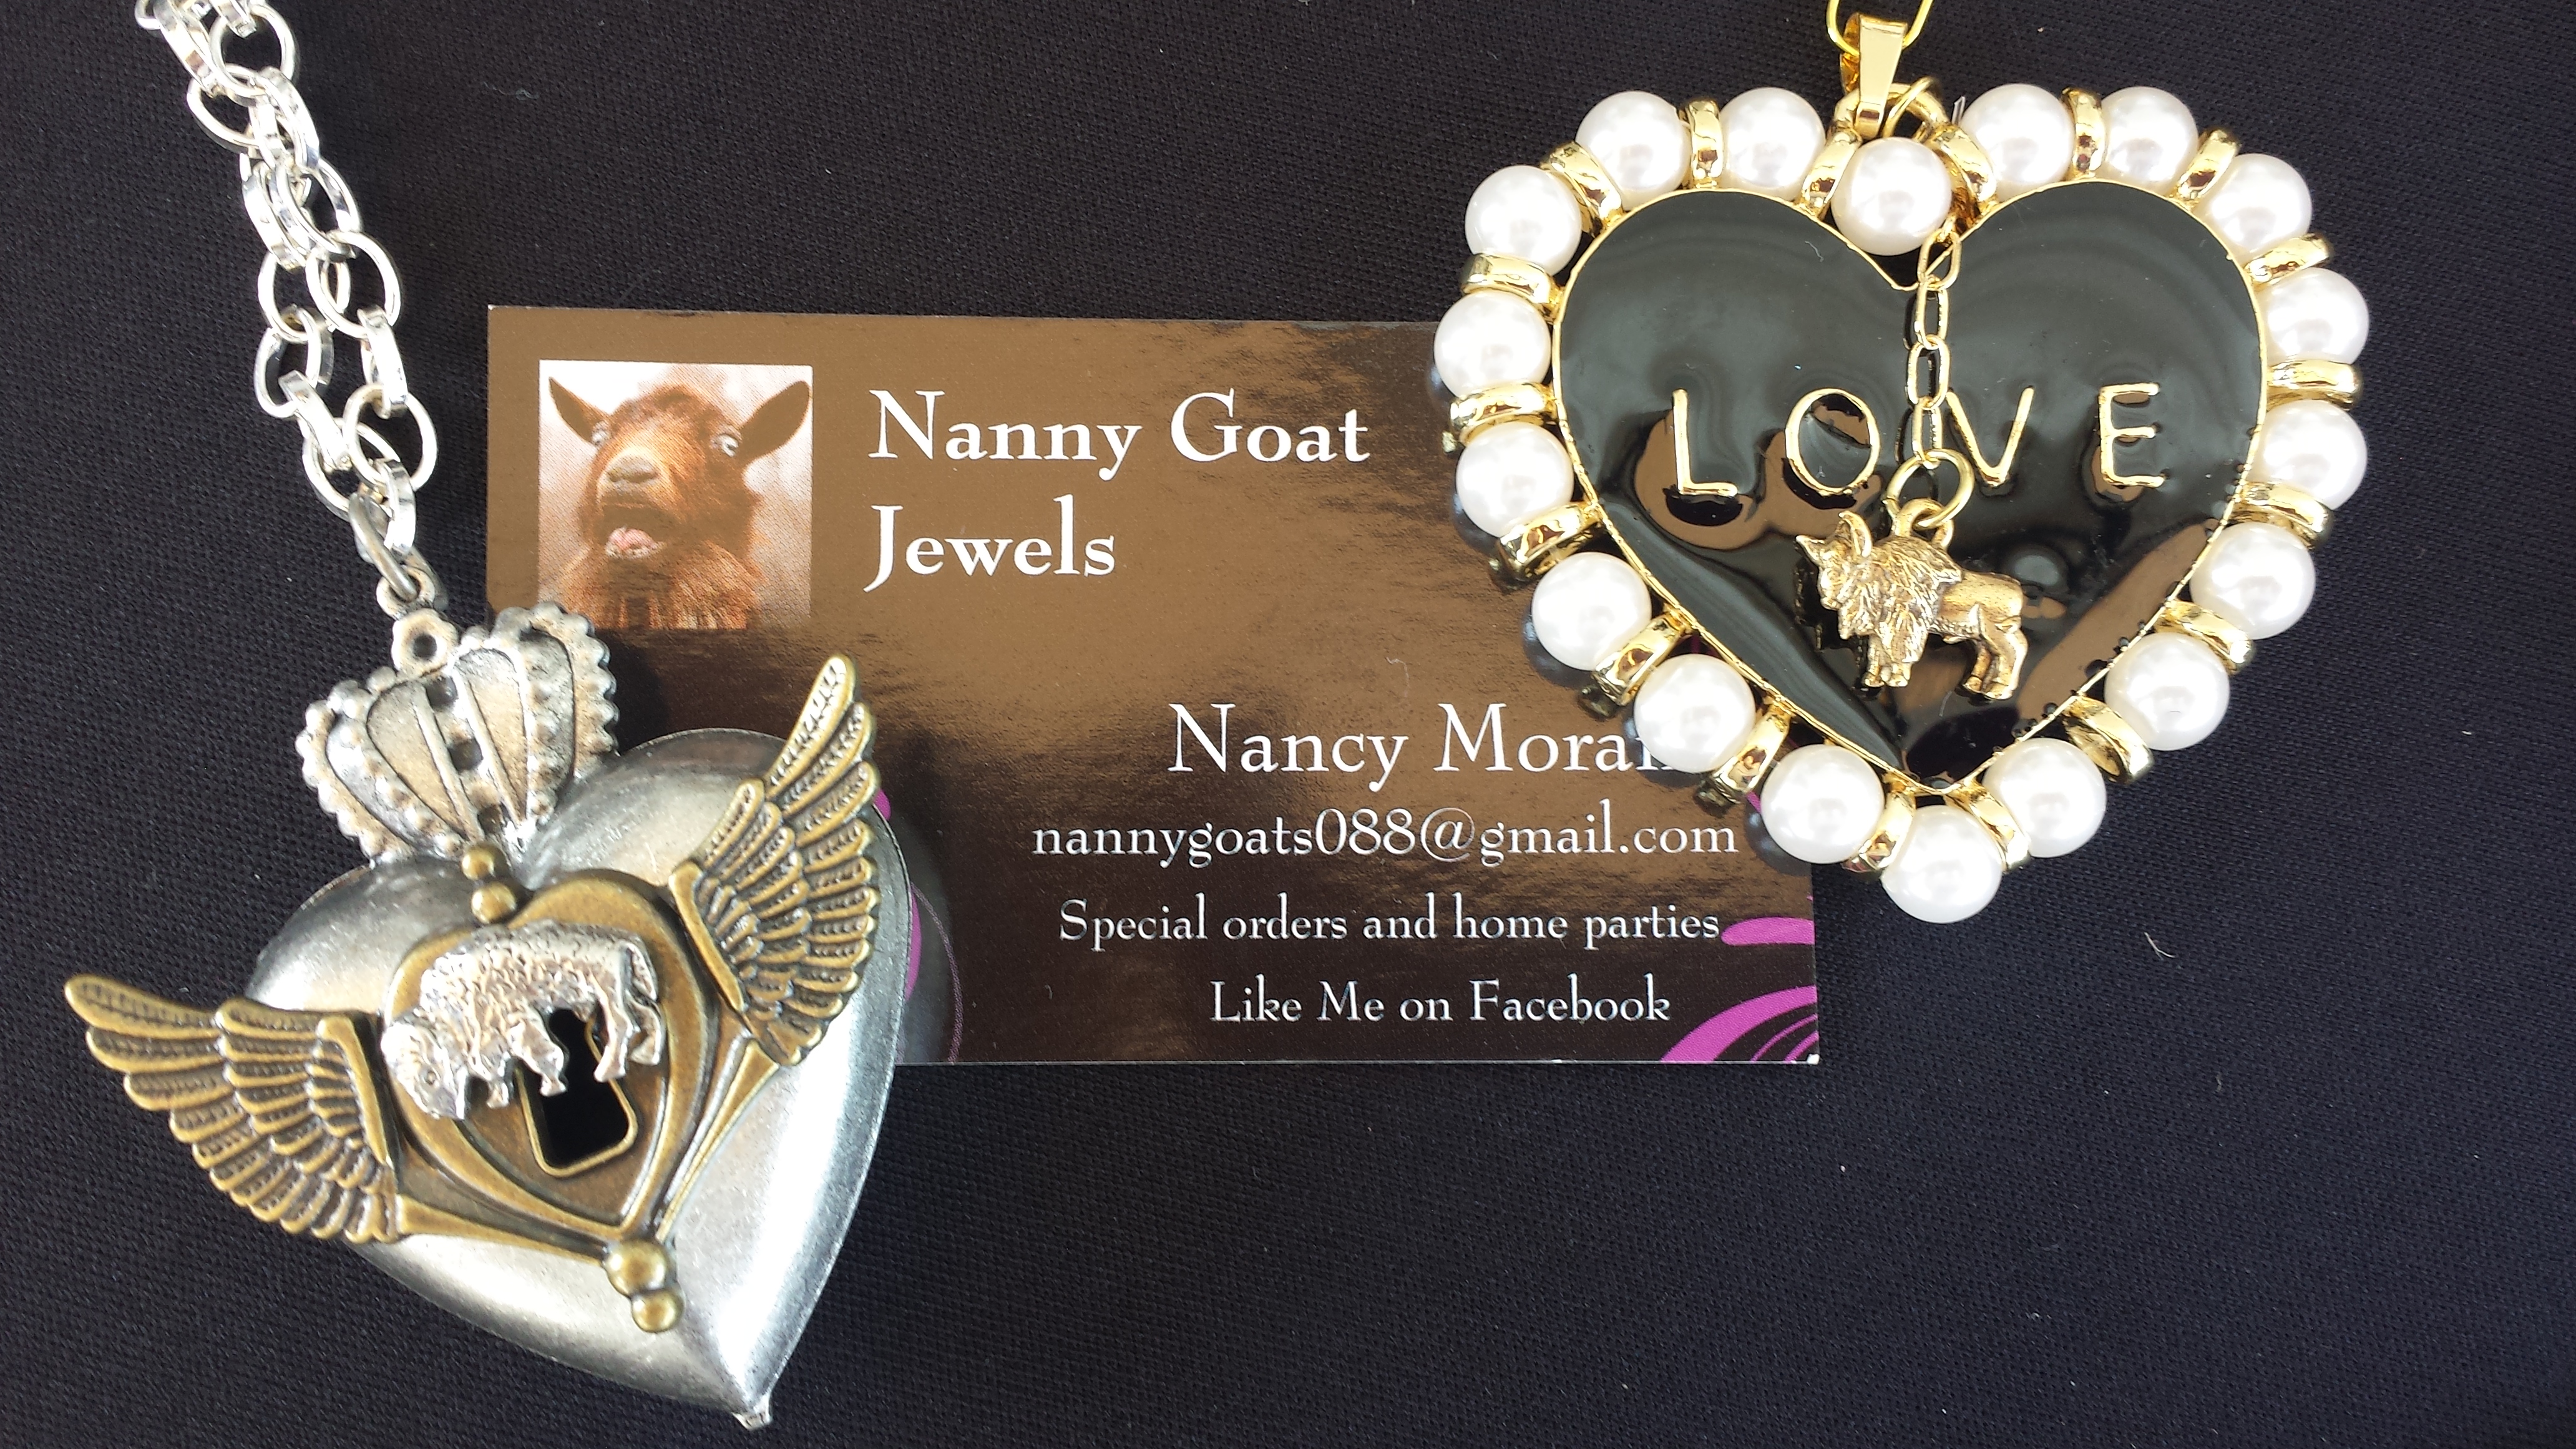 Small Business Saturday spotlight: Nanny Goat Jewels